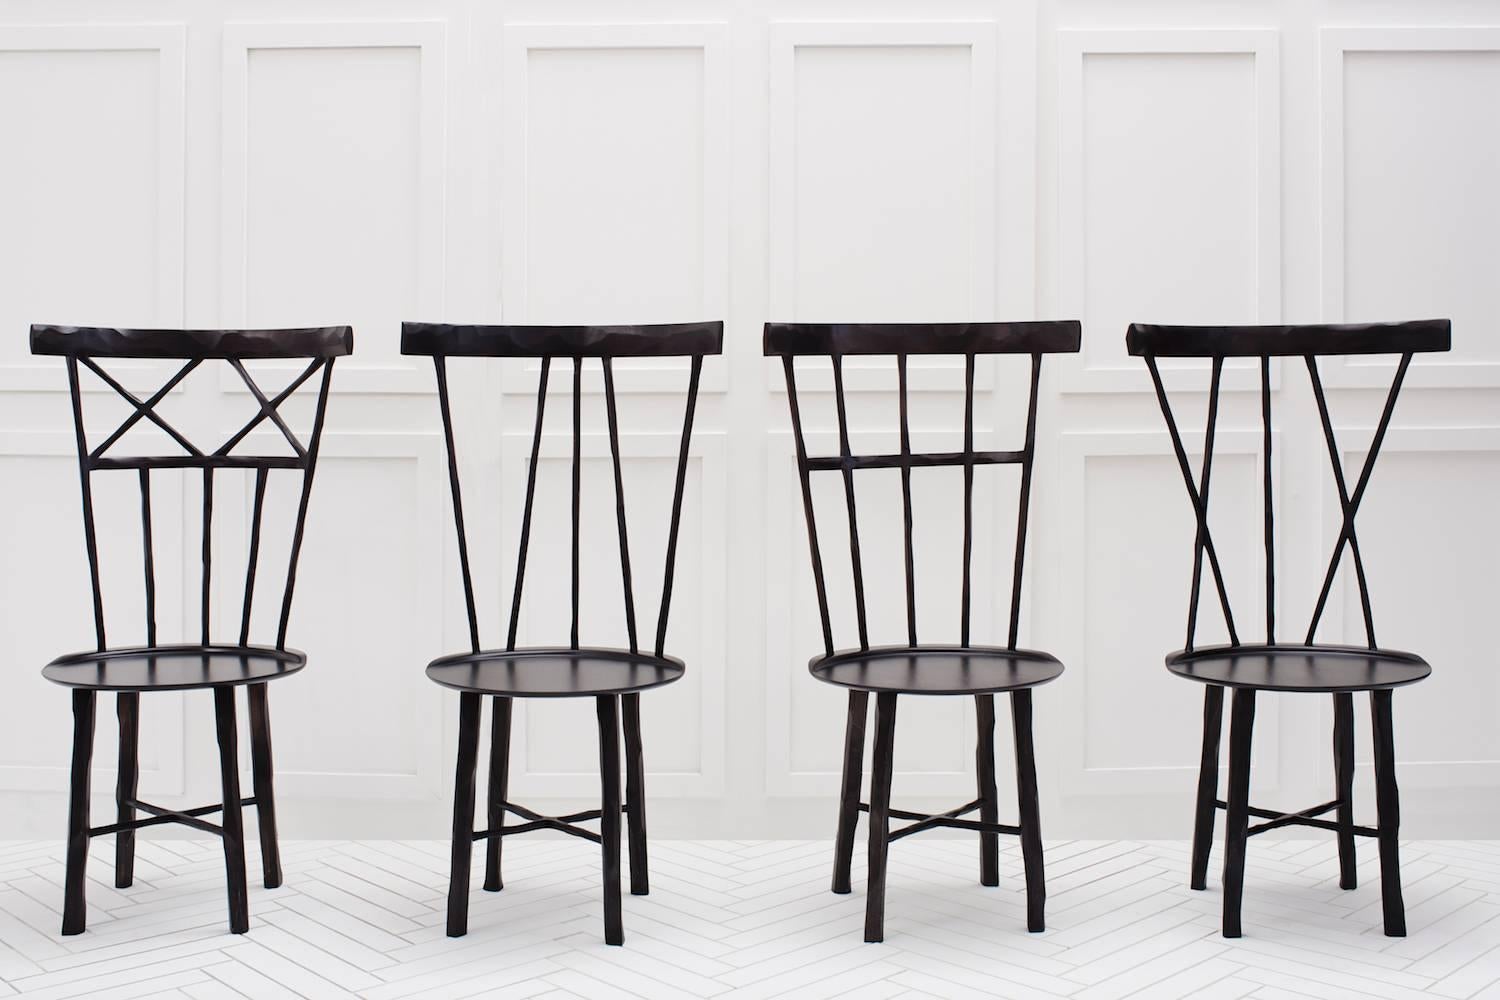 Une interprétation moderne de la chaise Windsor classique. Fabriqué en érable dur, chaque rayon et chaque pied est méticuleusement sculpté à la main avec des contours organiques doux. 

Veuillez noter que les délais pour les commandes personnalisées